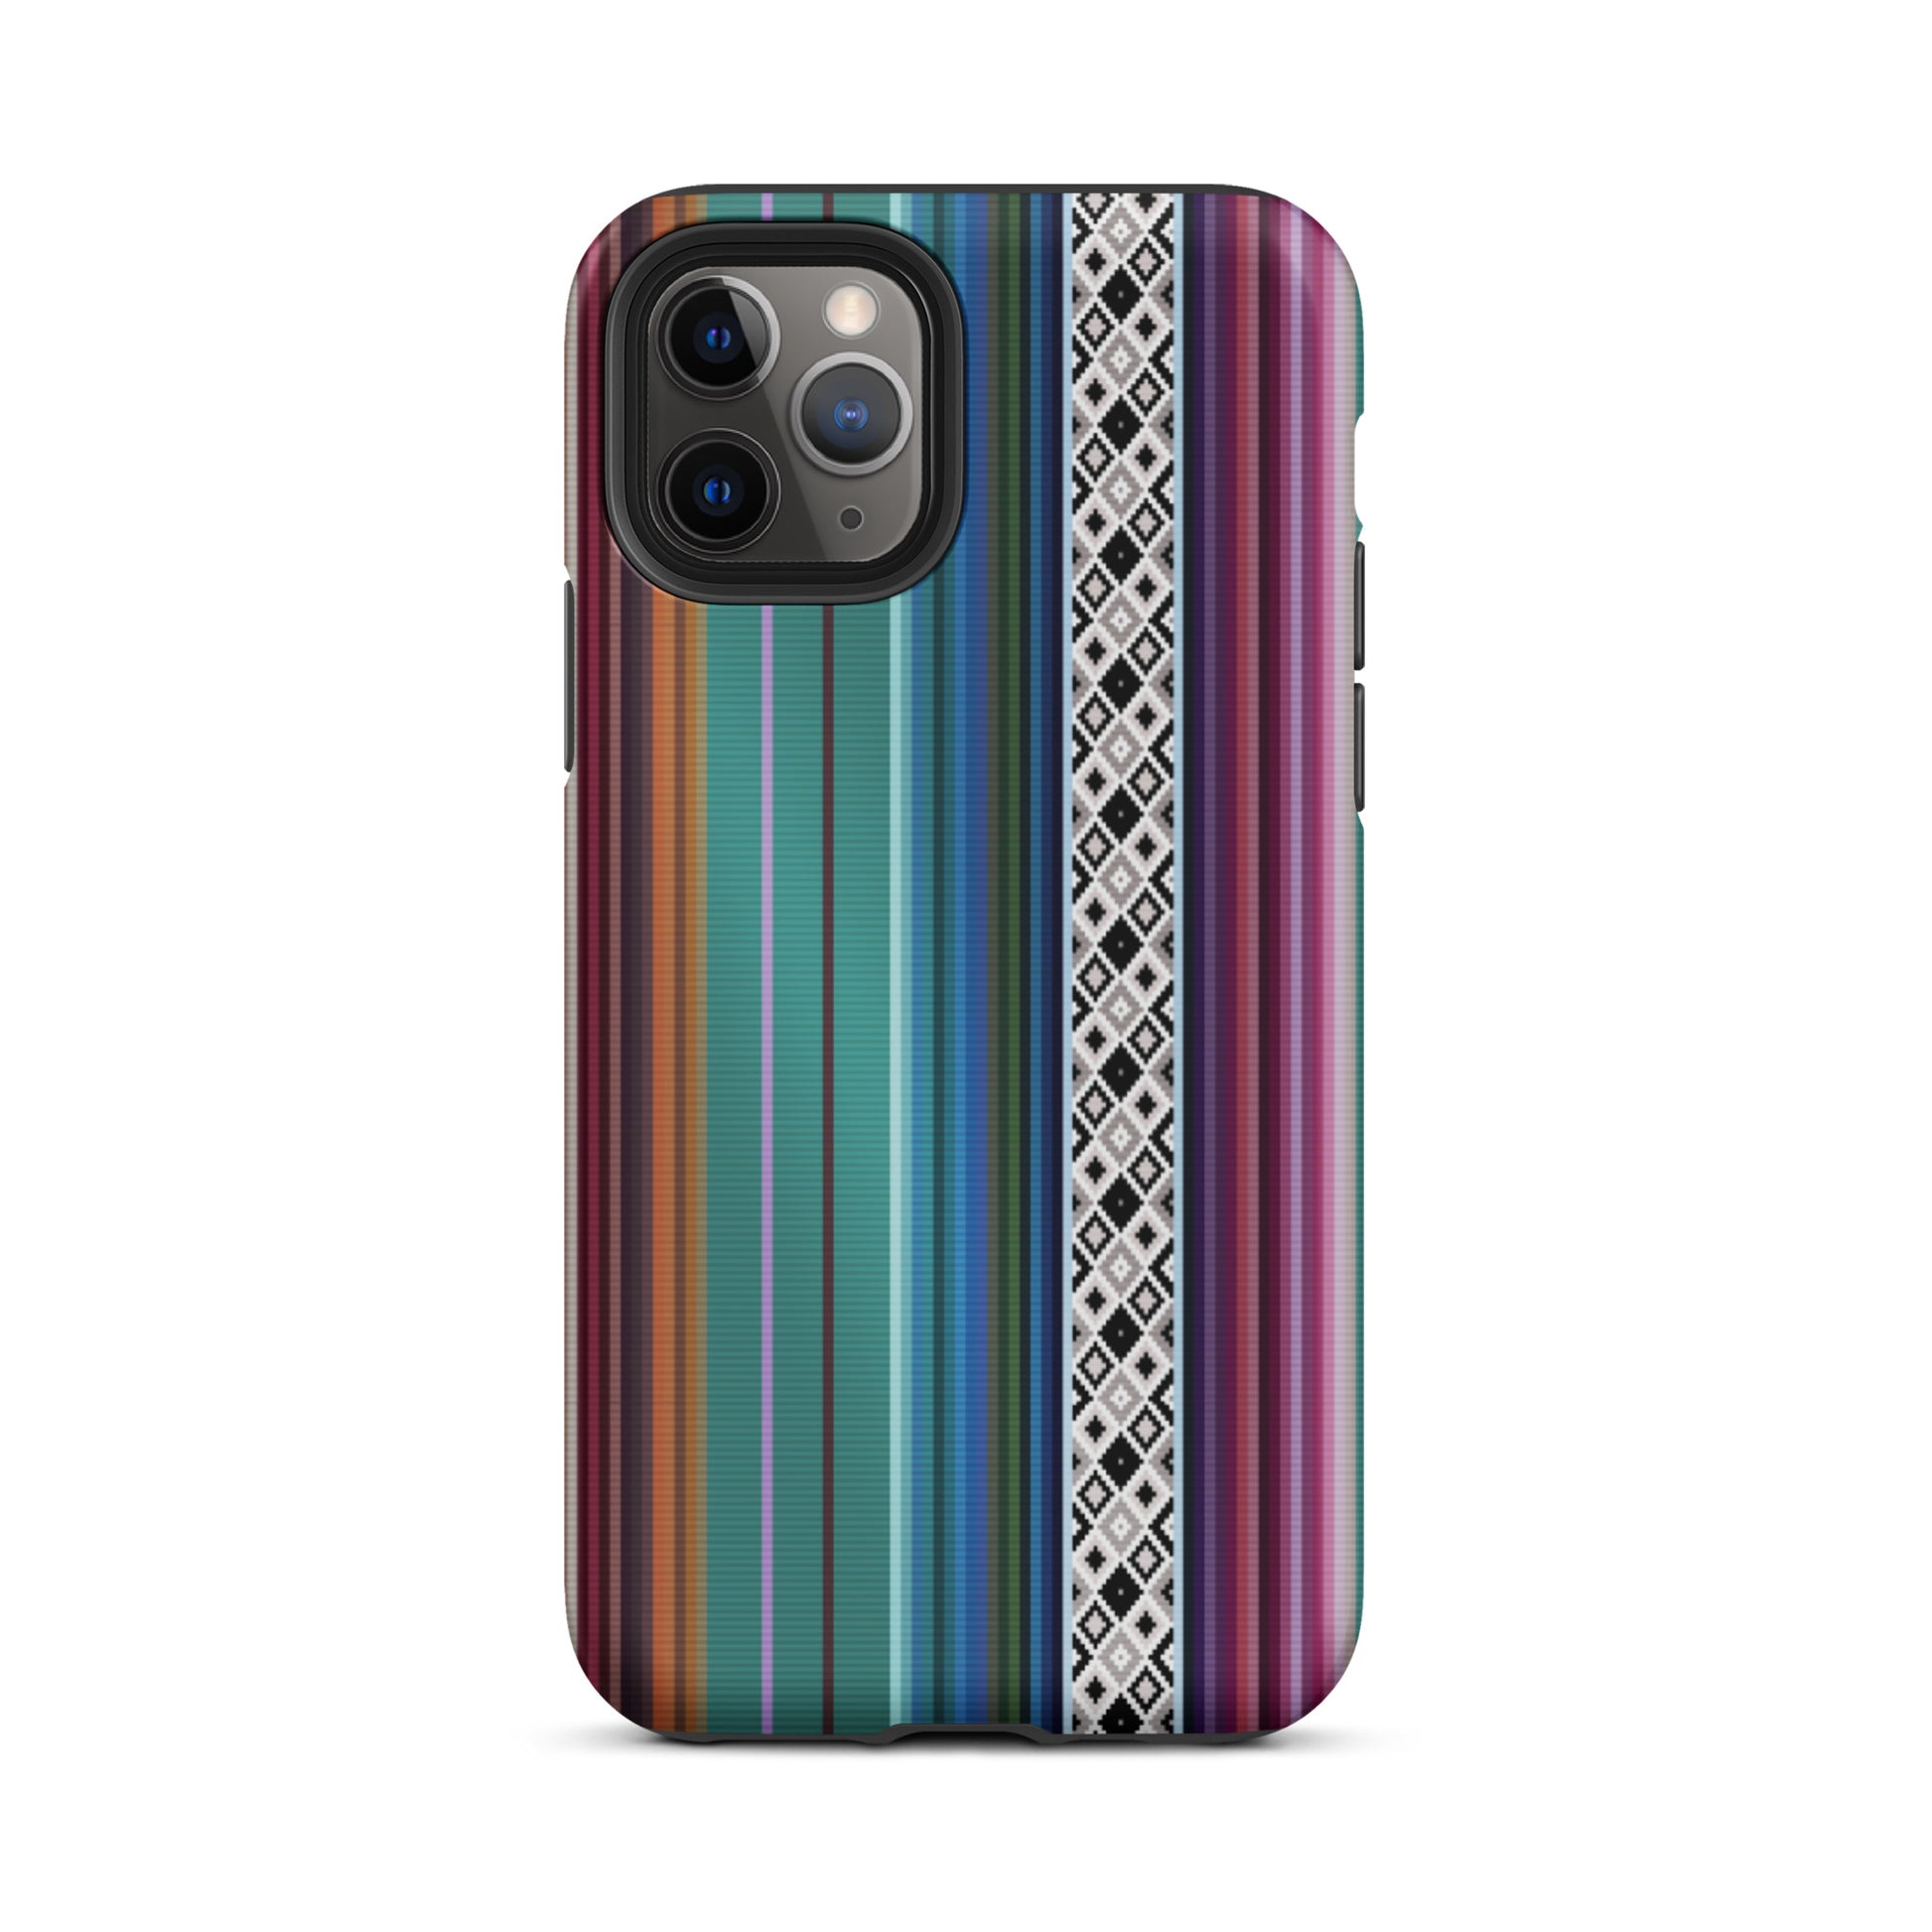 Mexican Aztec Tough iPhone 11 Pro case